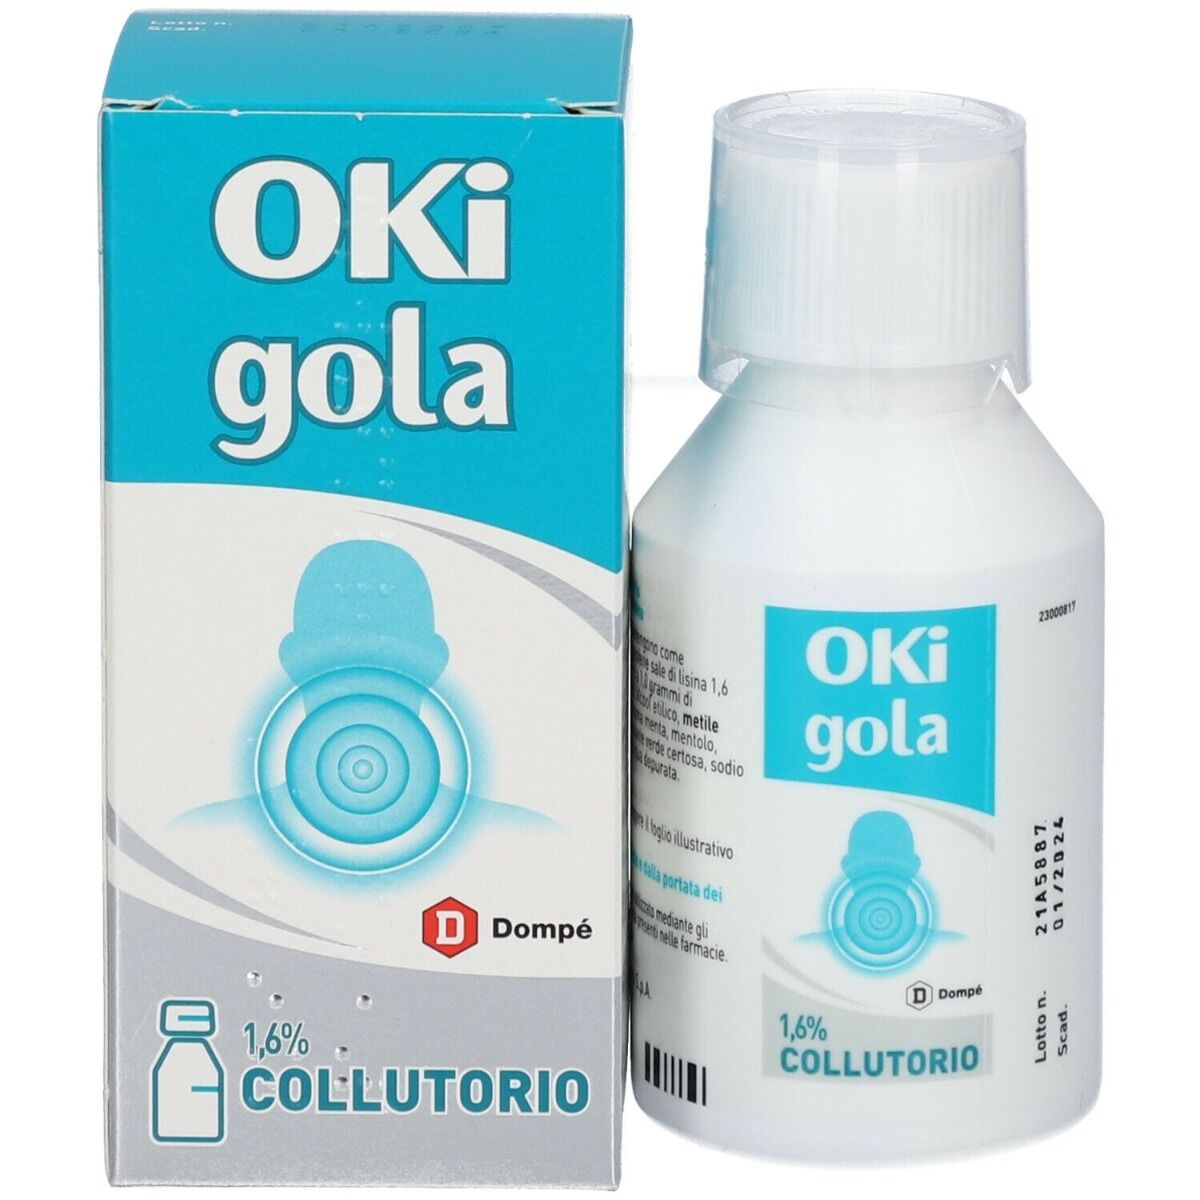 Gola Oki Infiammazione e Dolore Ketoprofene Analgesico Collutorio 150 ml